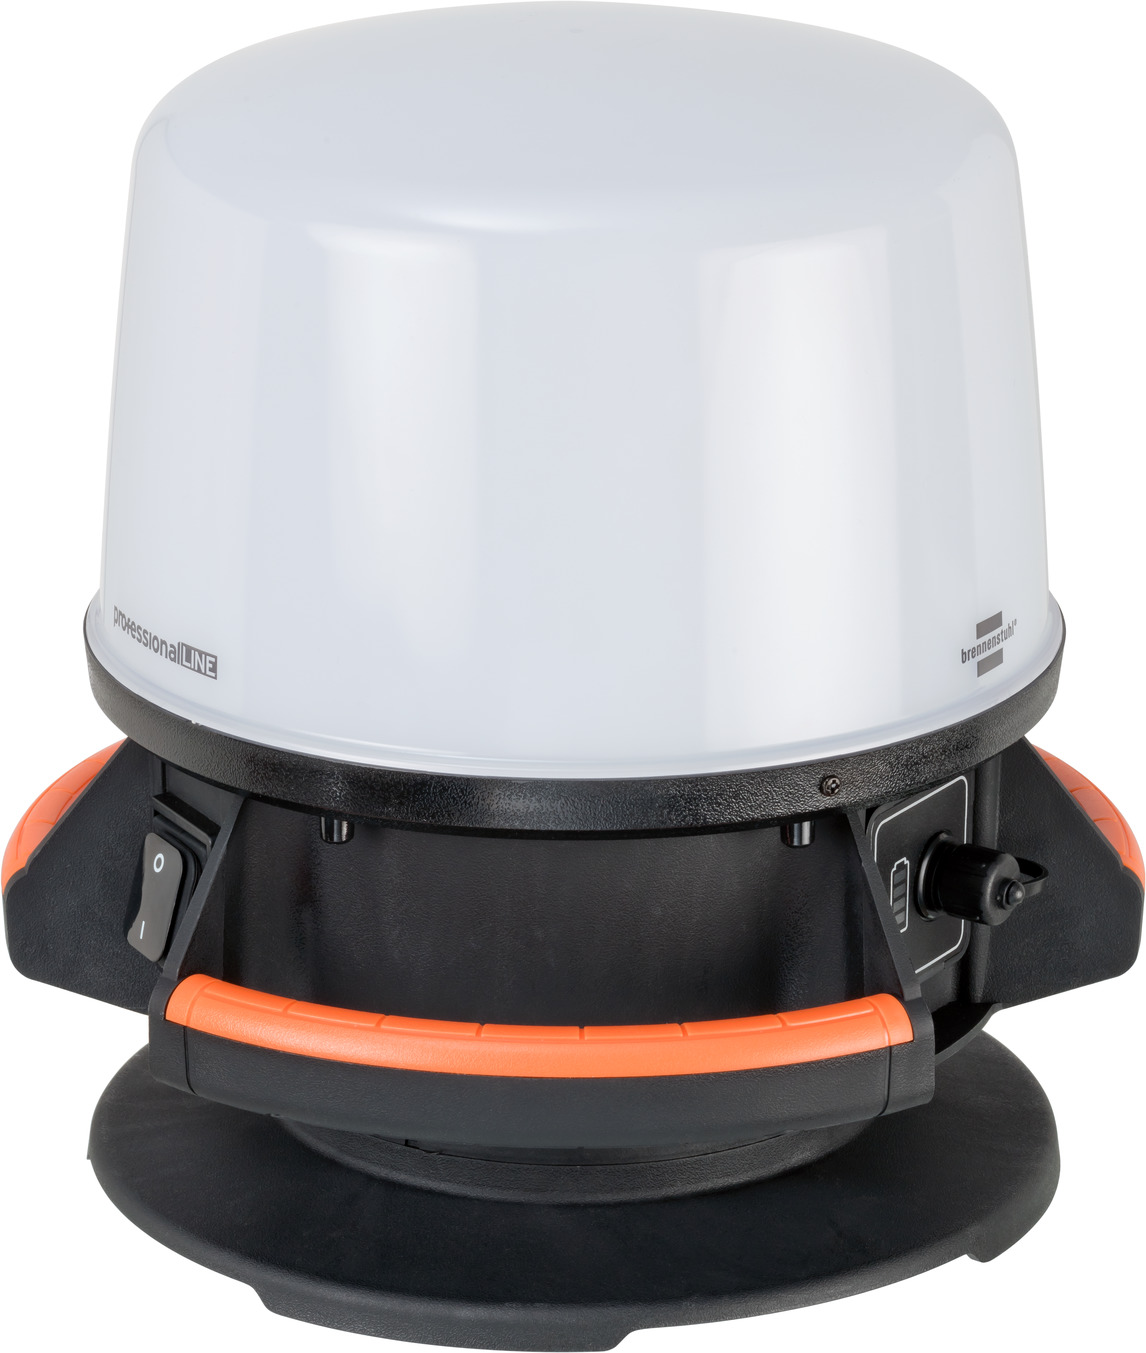 L'OUTIL PARFAIT - Projecteur de chantier halogène portatif - Fonctionne  avec une ampoule 330W basse consommation Lampe en ve - Livraison  gratuite dès 120€